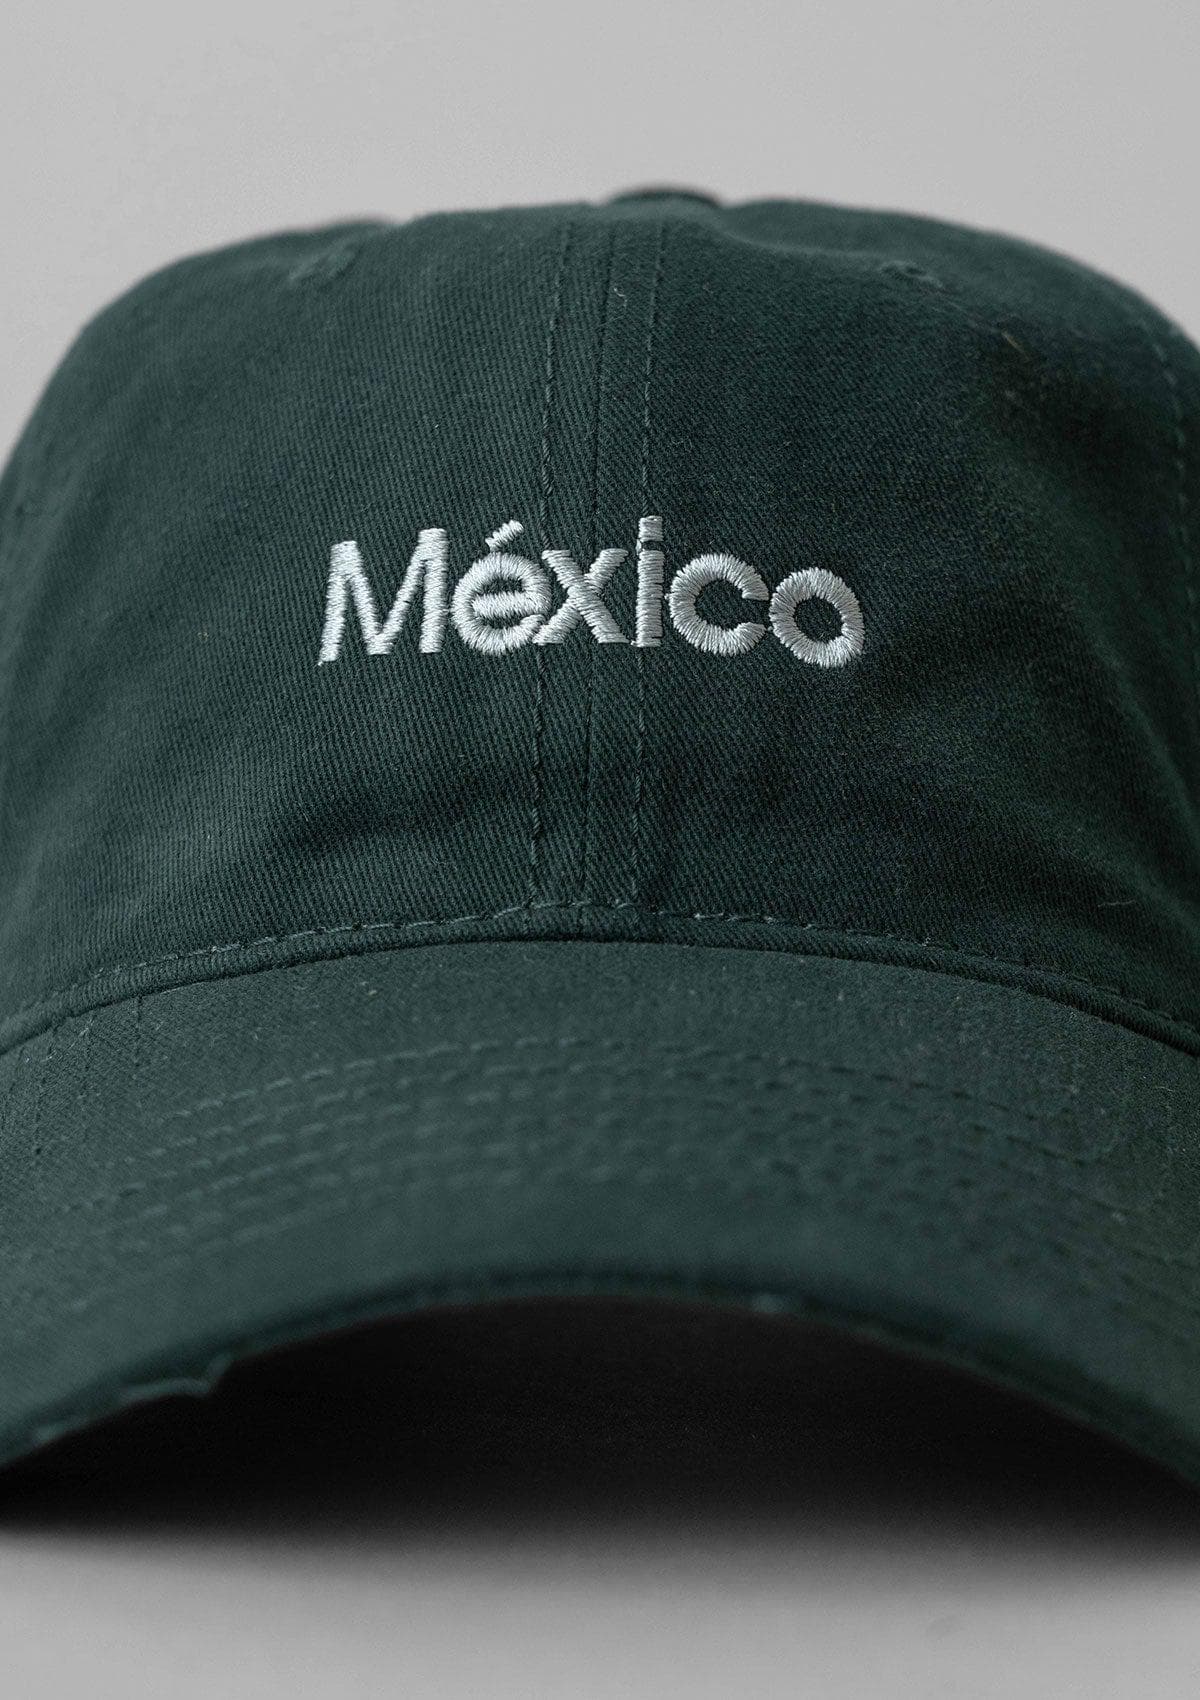 Mexico Cap - Green